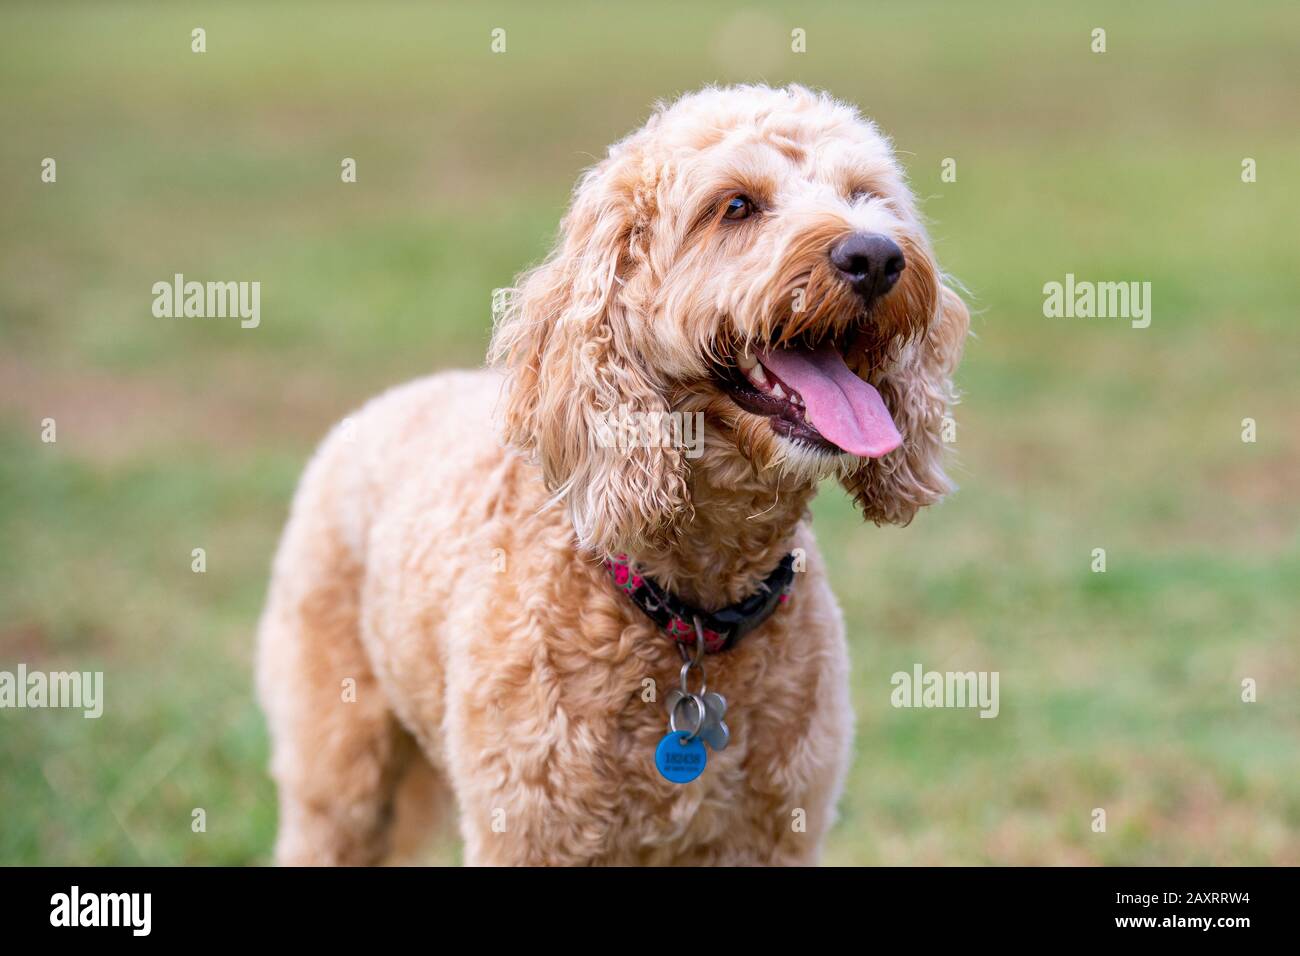 Ein honigfarbener Spoodle-Hund sitzt leise in einem Park, nachdem er mit  einem Ball gespielt hat Stockfotografie - Alamy